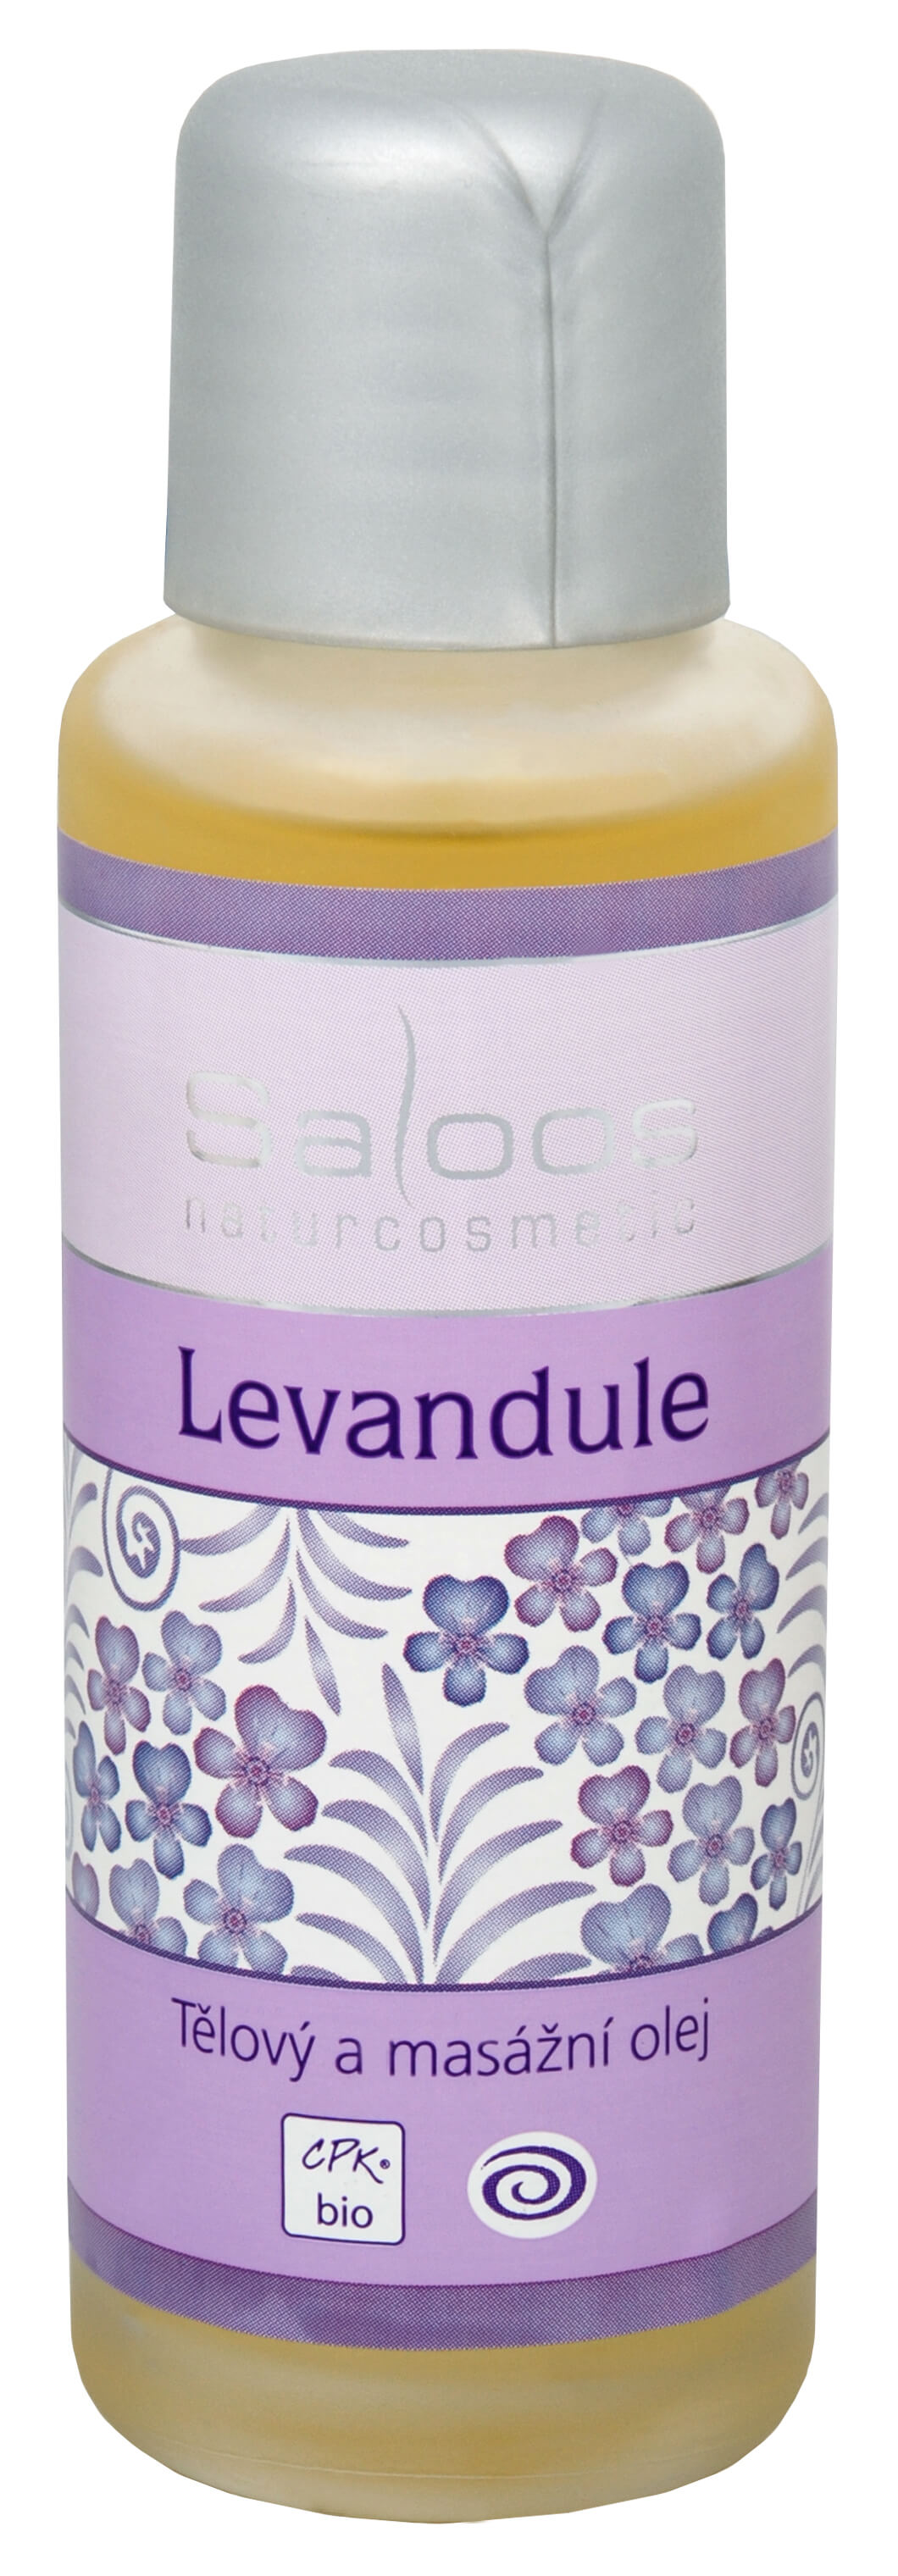 Zobrazit detail výrobku Saloos Bio tělový a masážní olej - Levandule 500 ml